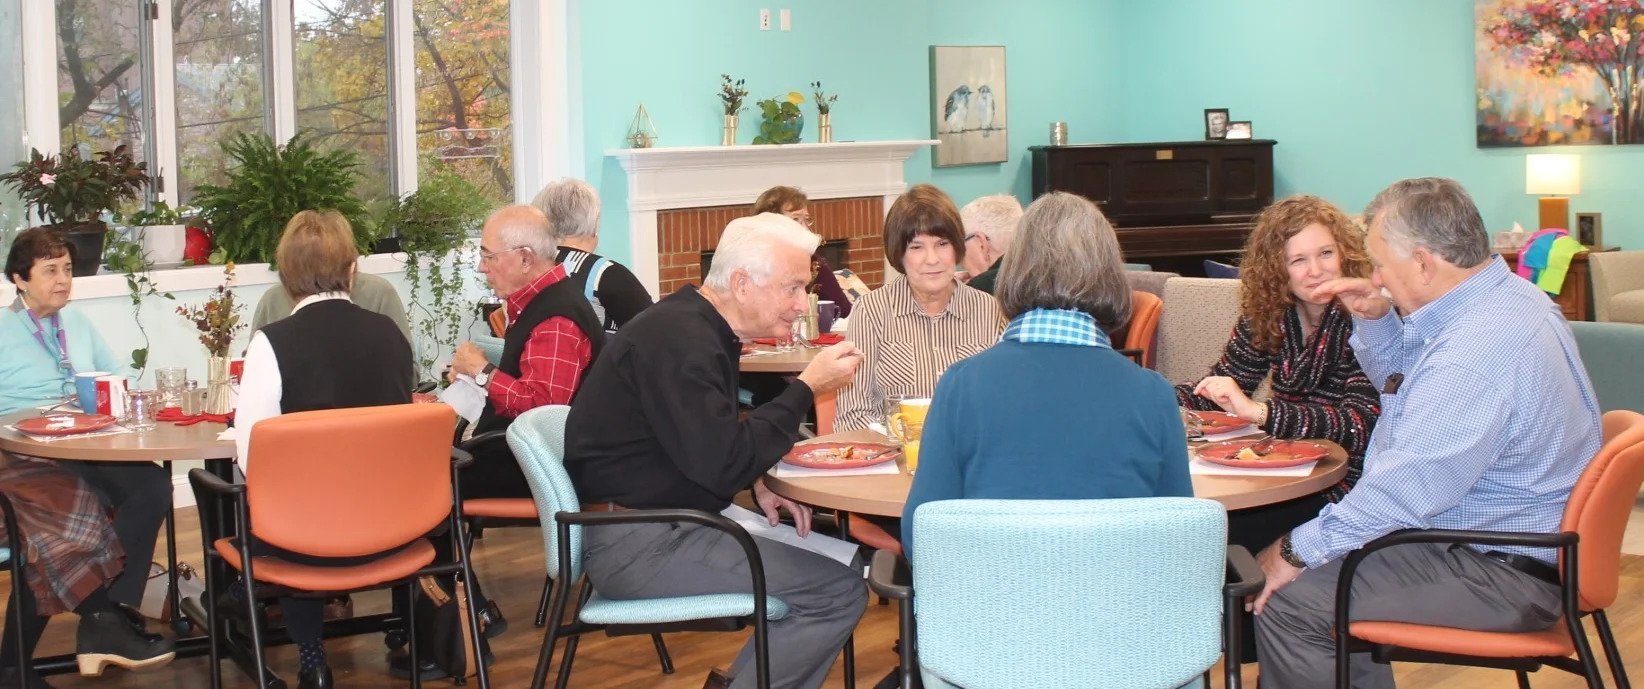 the dementia day program friends club enjoying a community meal